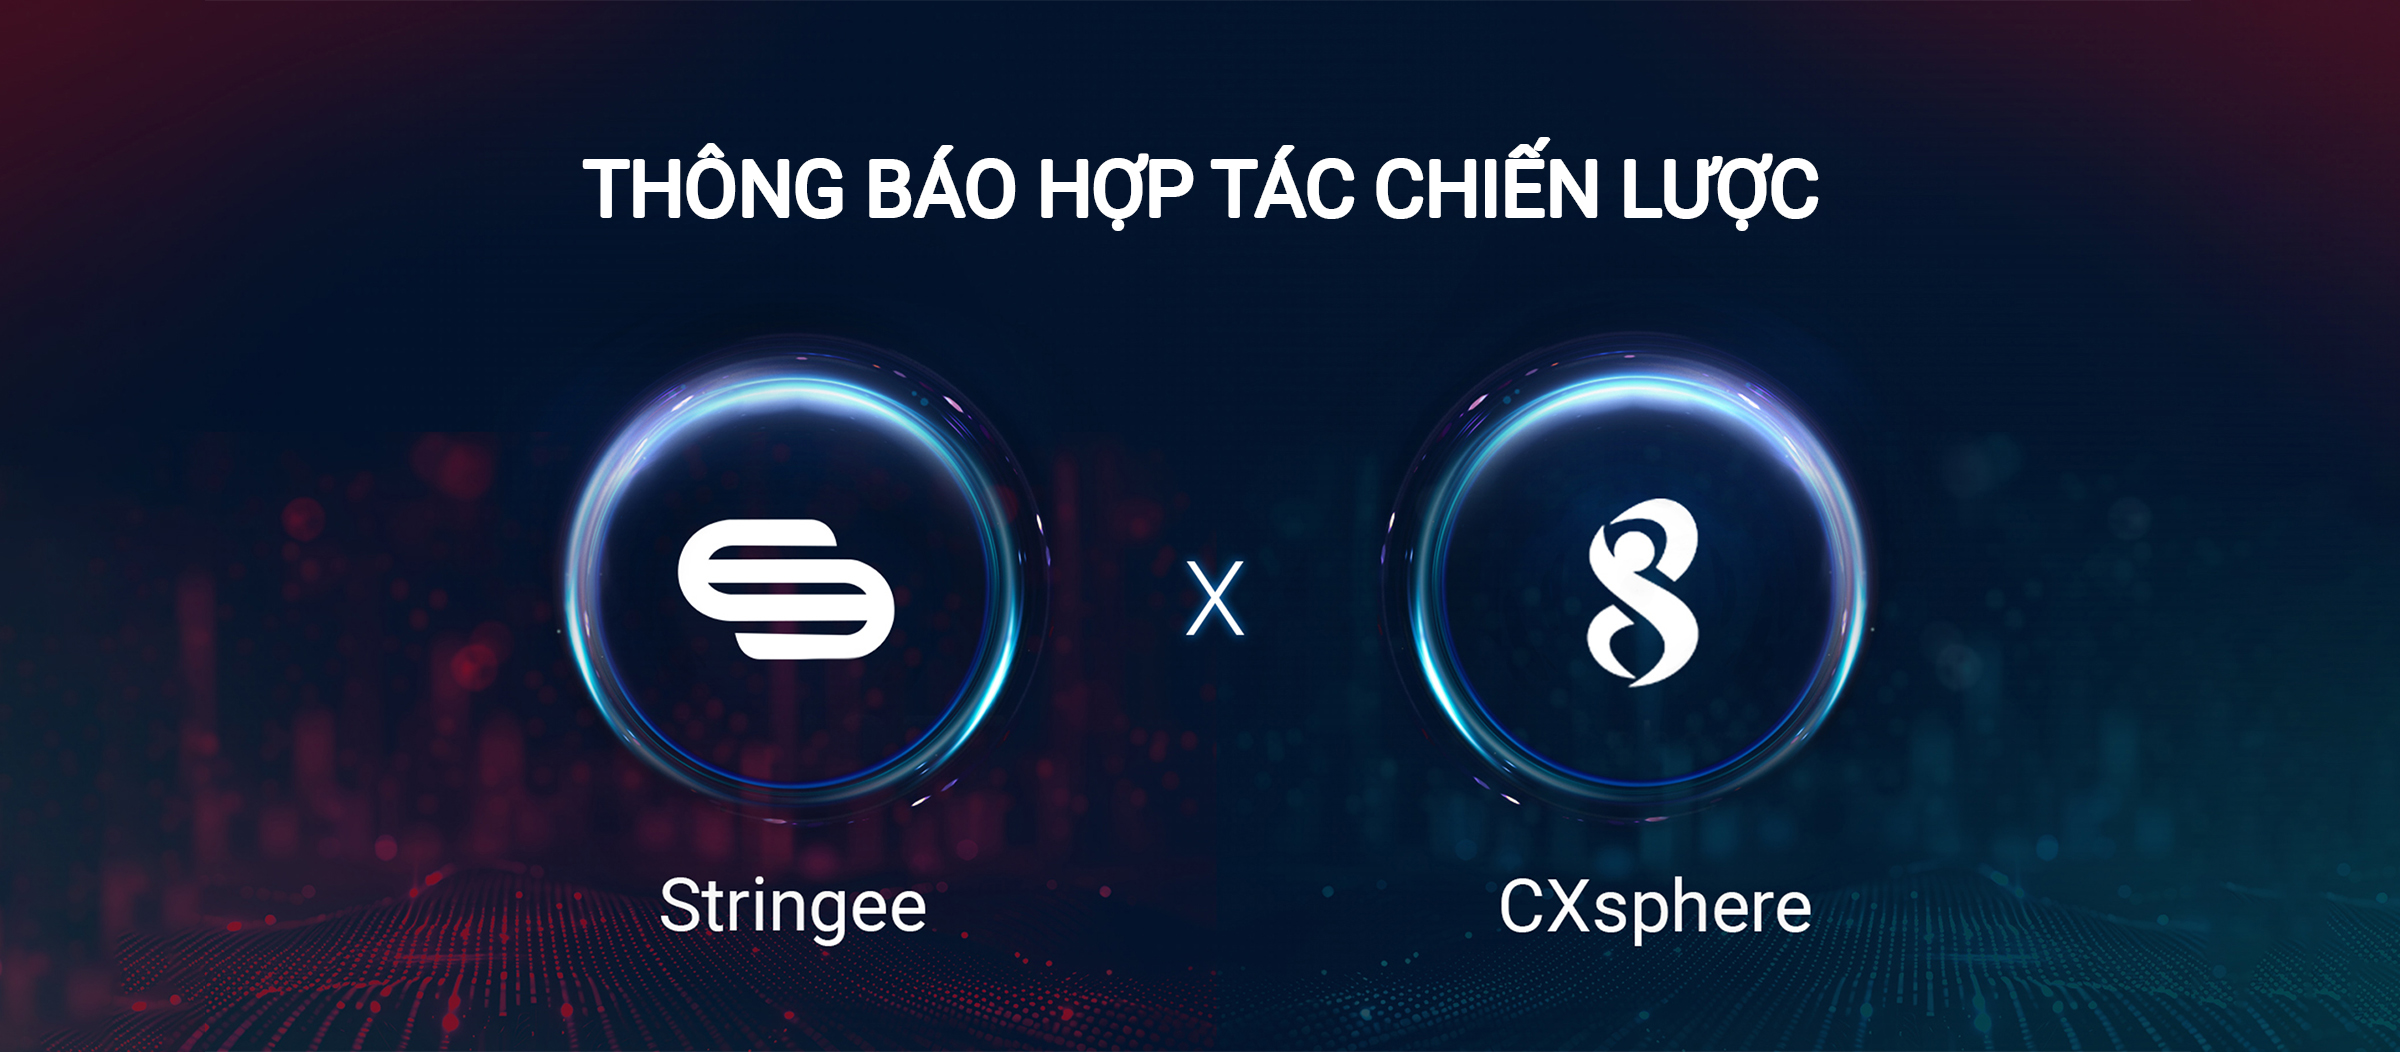 Thông báo về Quan hệ Đối tác Chiến lược giữa Stringee và CXsphere